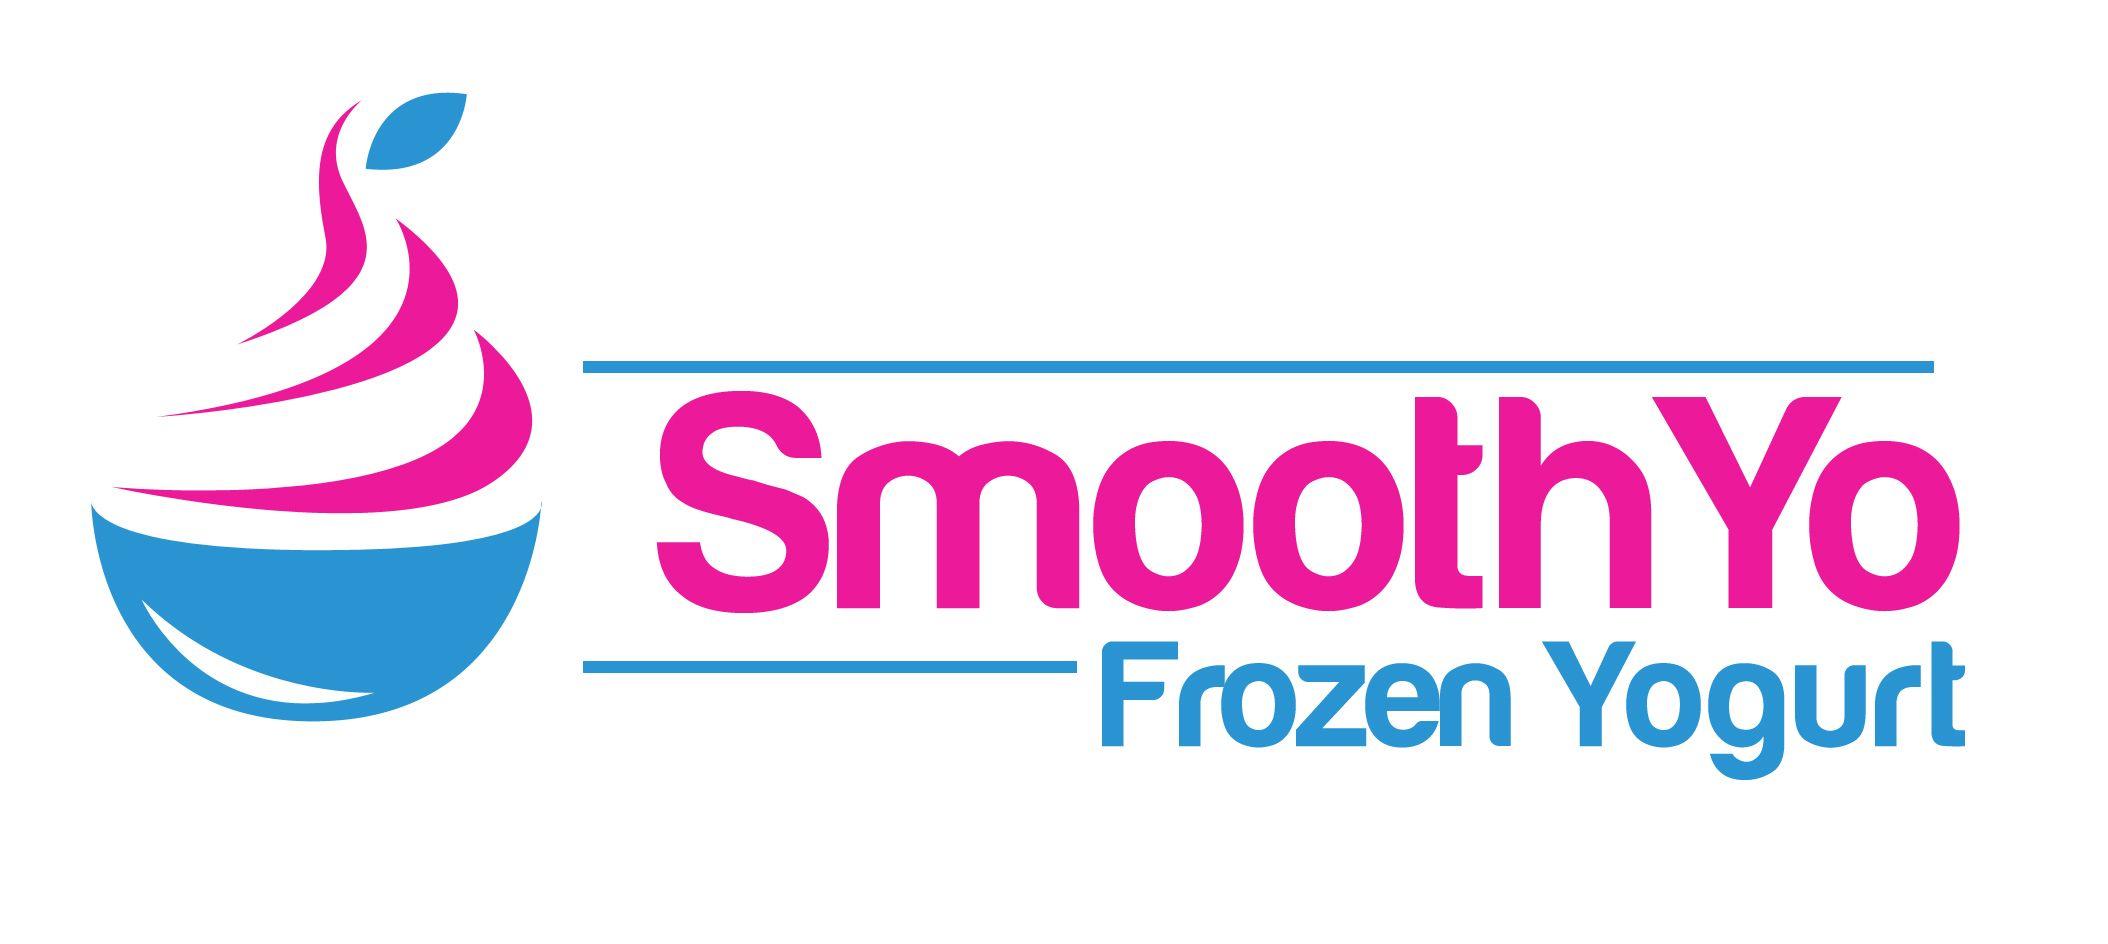 Frozen Yogurt Logo - Smooth Yo logo - Nanci's Frozen YogurtNanci's Frozen Yogurt